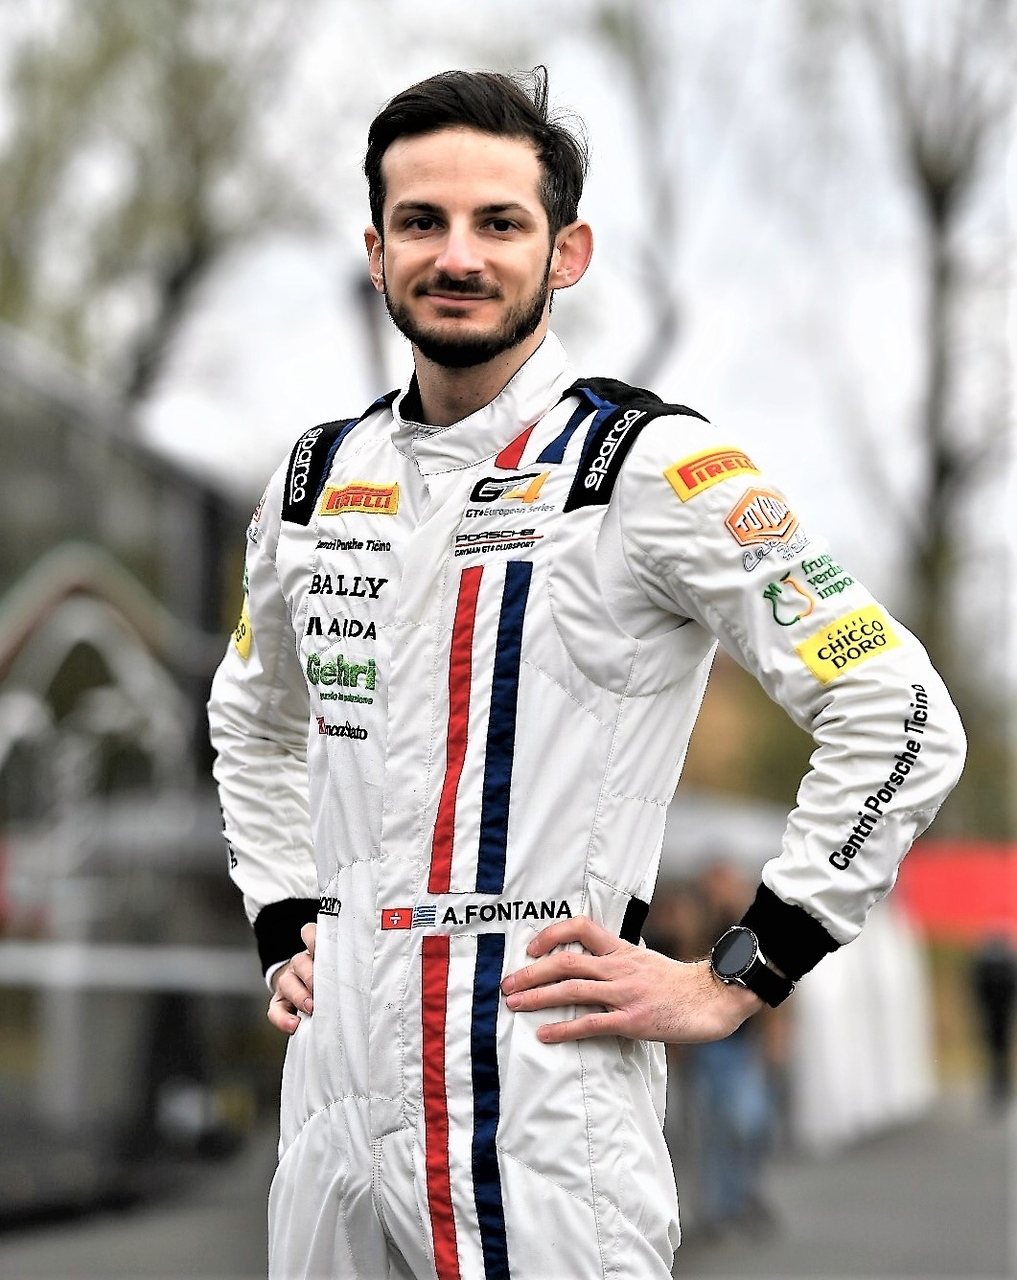 Alekss Fontana: Tičīno braucējs, dzimis Lugāno 5. gada 1992. augustā, nodarbojas ar tehniskajiem komentāriem Formula 1 Grand Prix izcīņā itāliski runājošajam Šveices radio un televīzijai